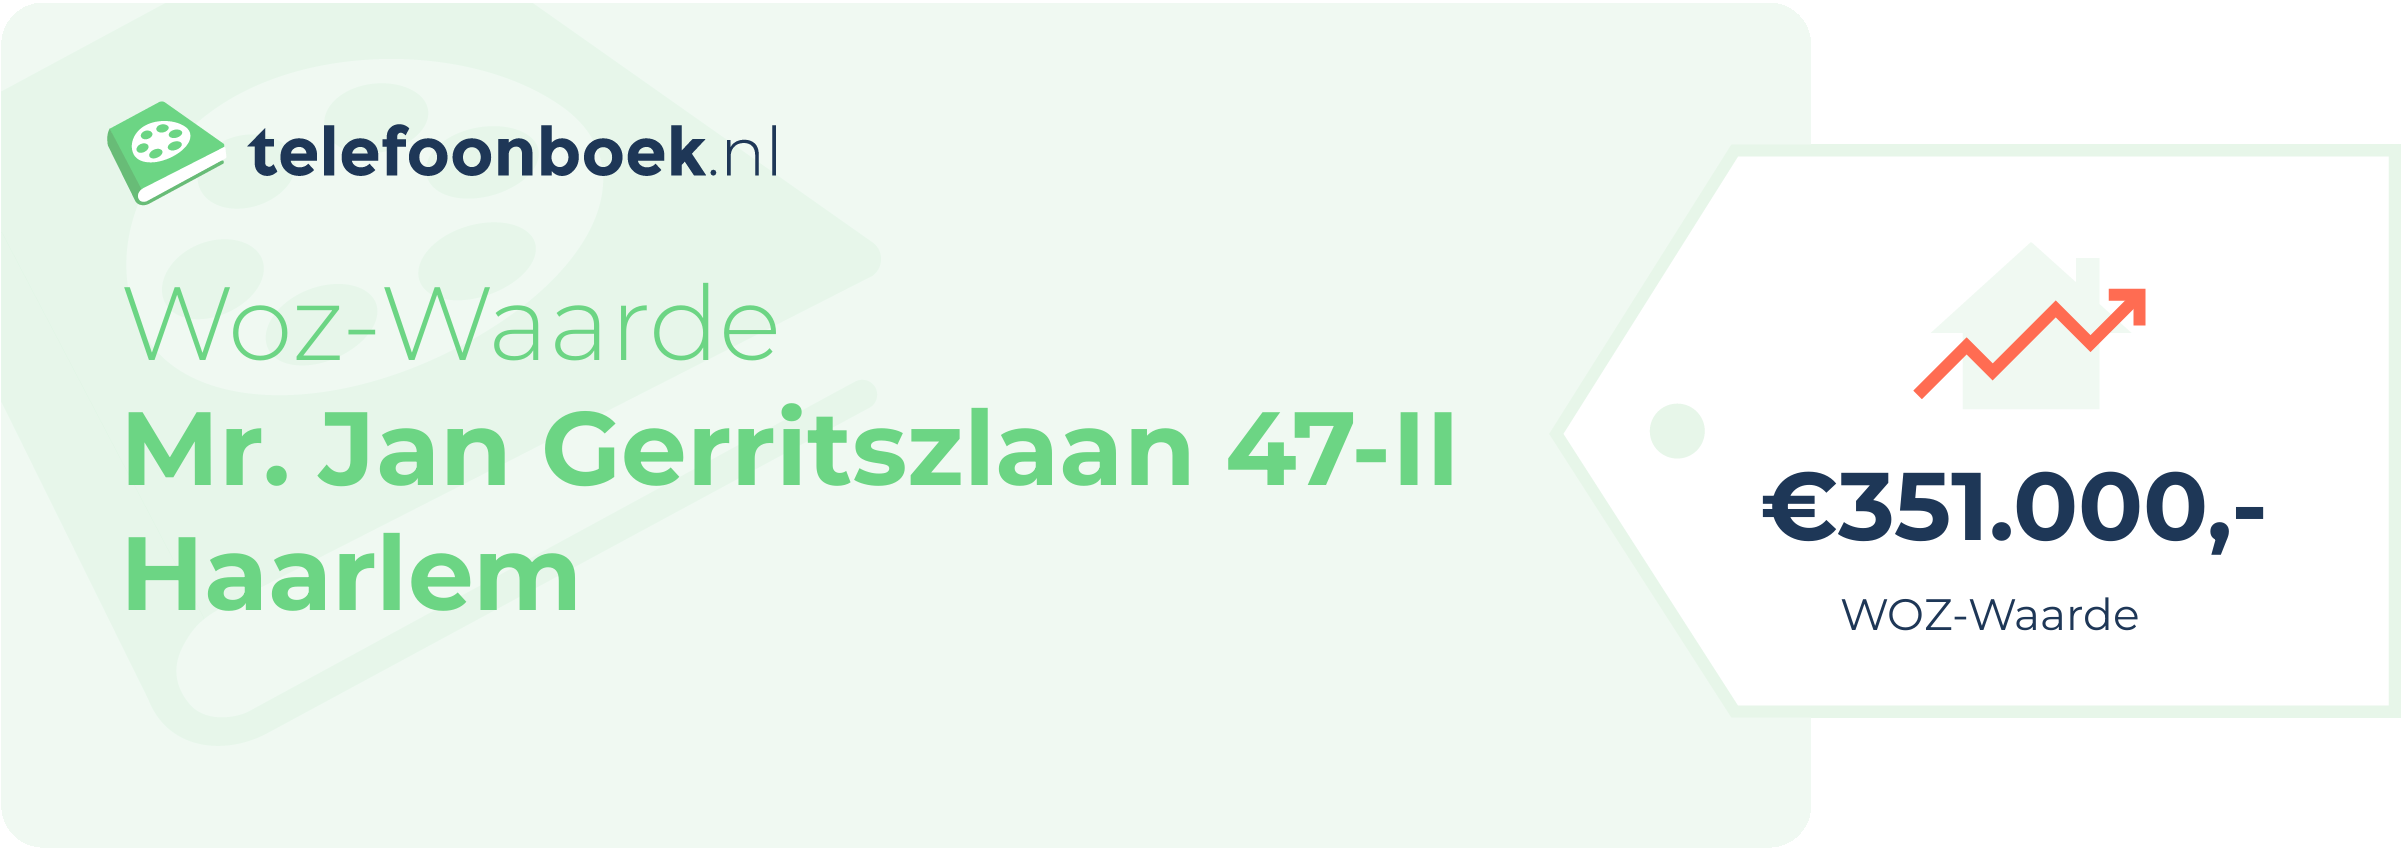 WOZ-waarde Mr. Jan Gerritszlaan 47-II Haarlem